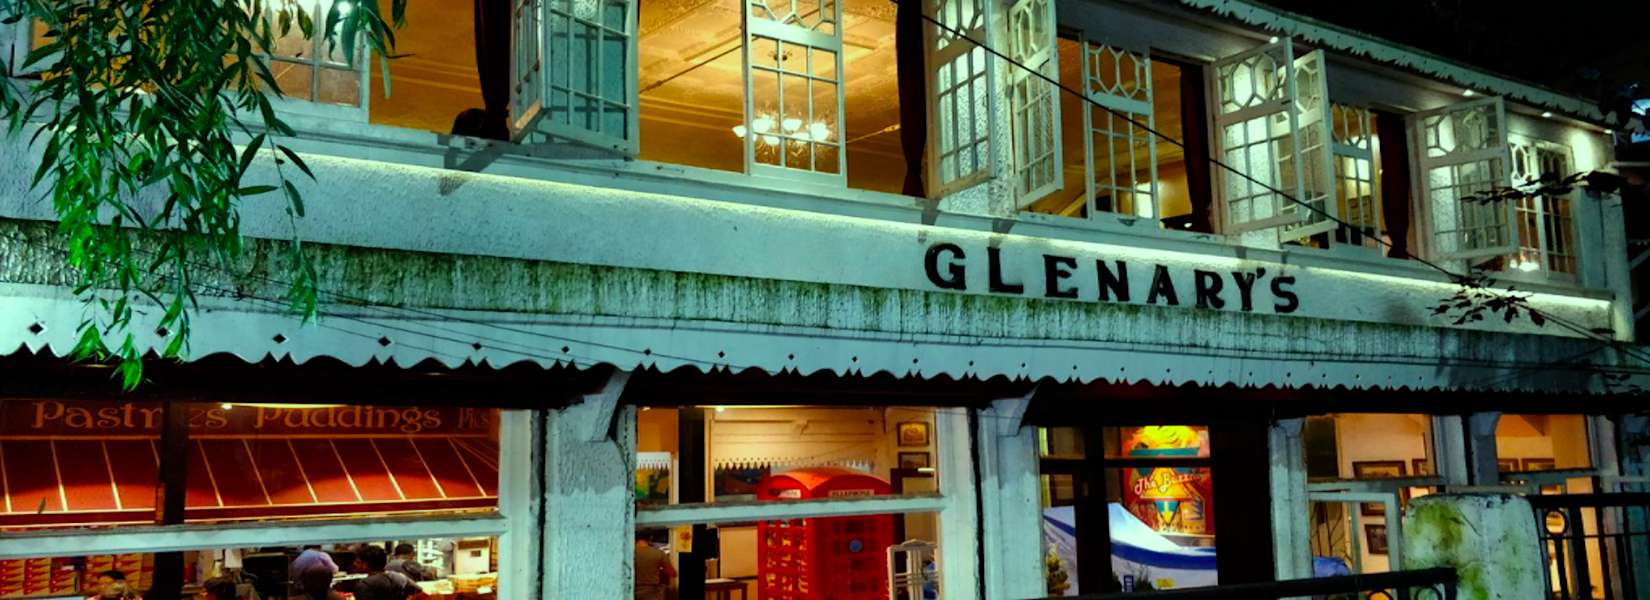 Glenary’s Restaurant, Bakery, and Pub